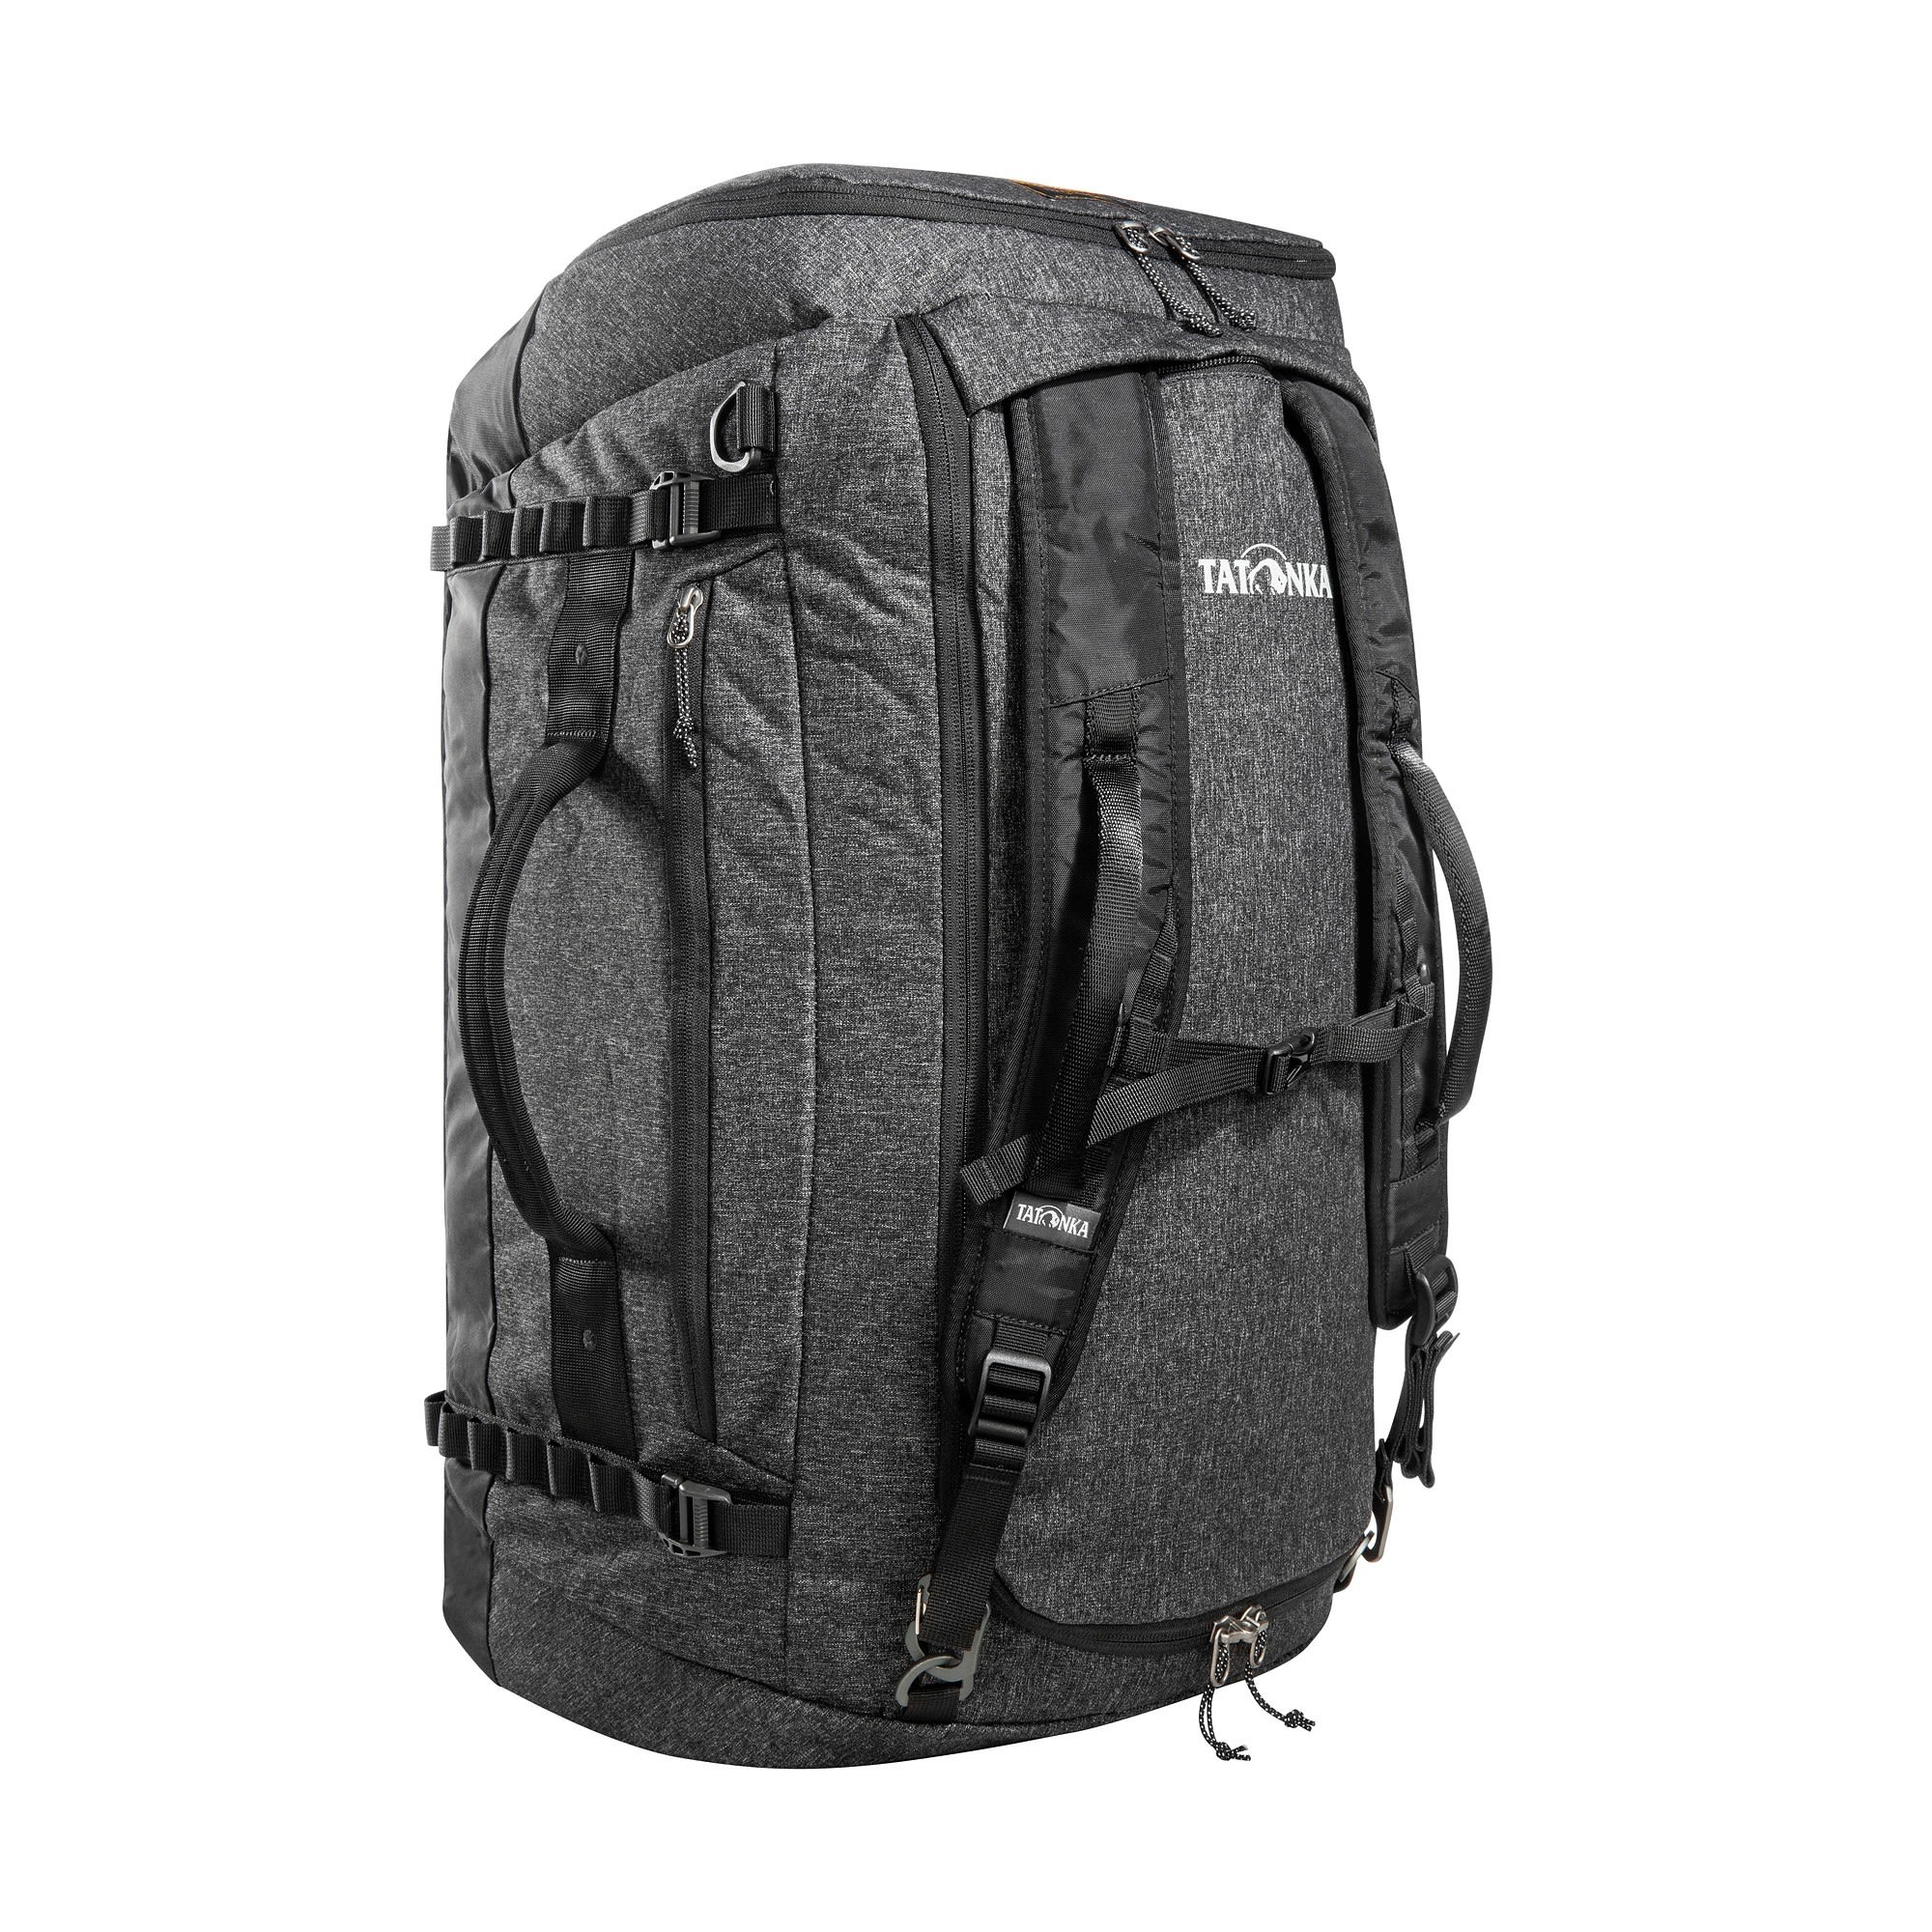 Tatonka Duffle Bag 65 Schwarz- Reisetaschen- Grsse 65l - Farbe Black unter Tatonka